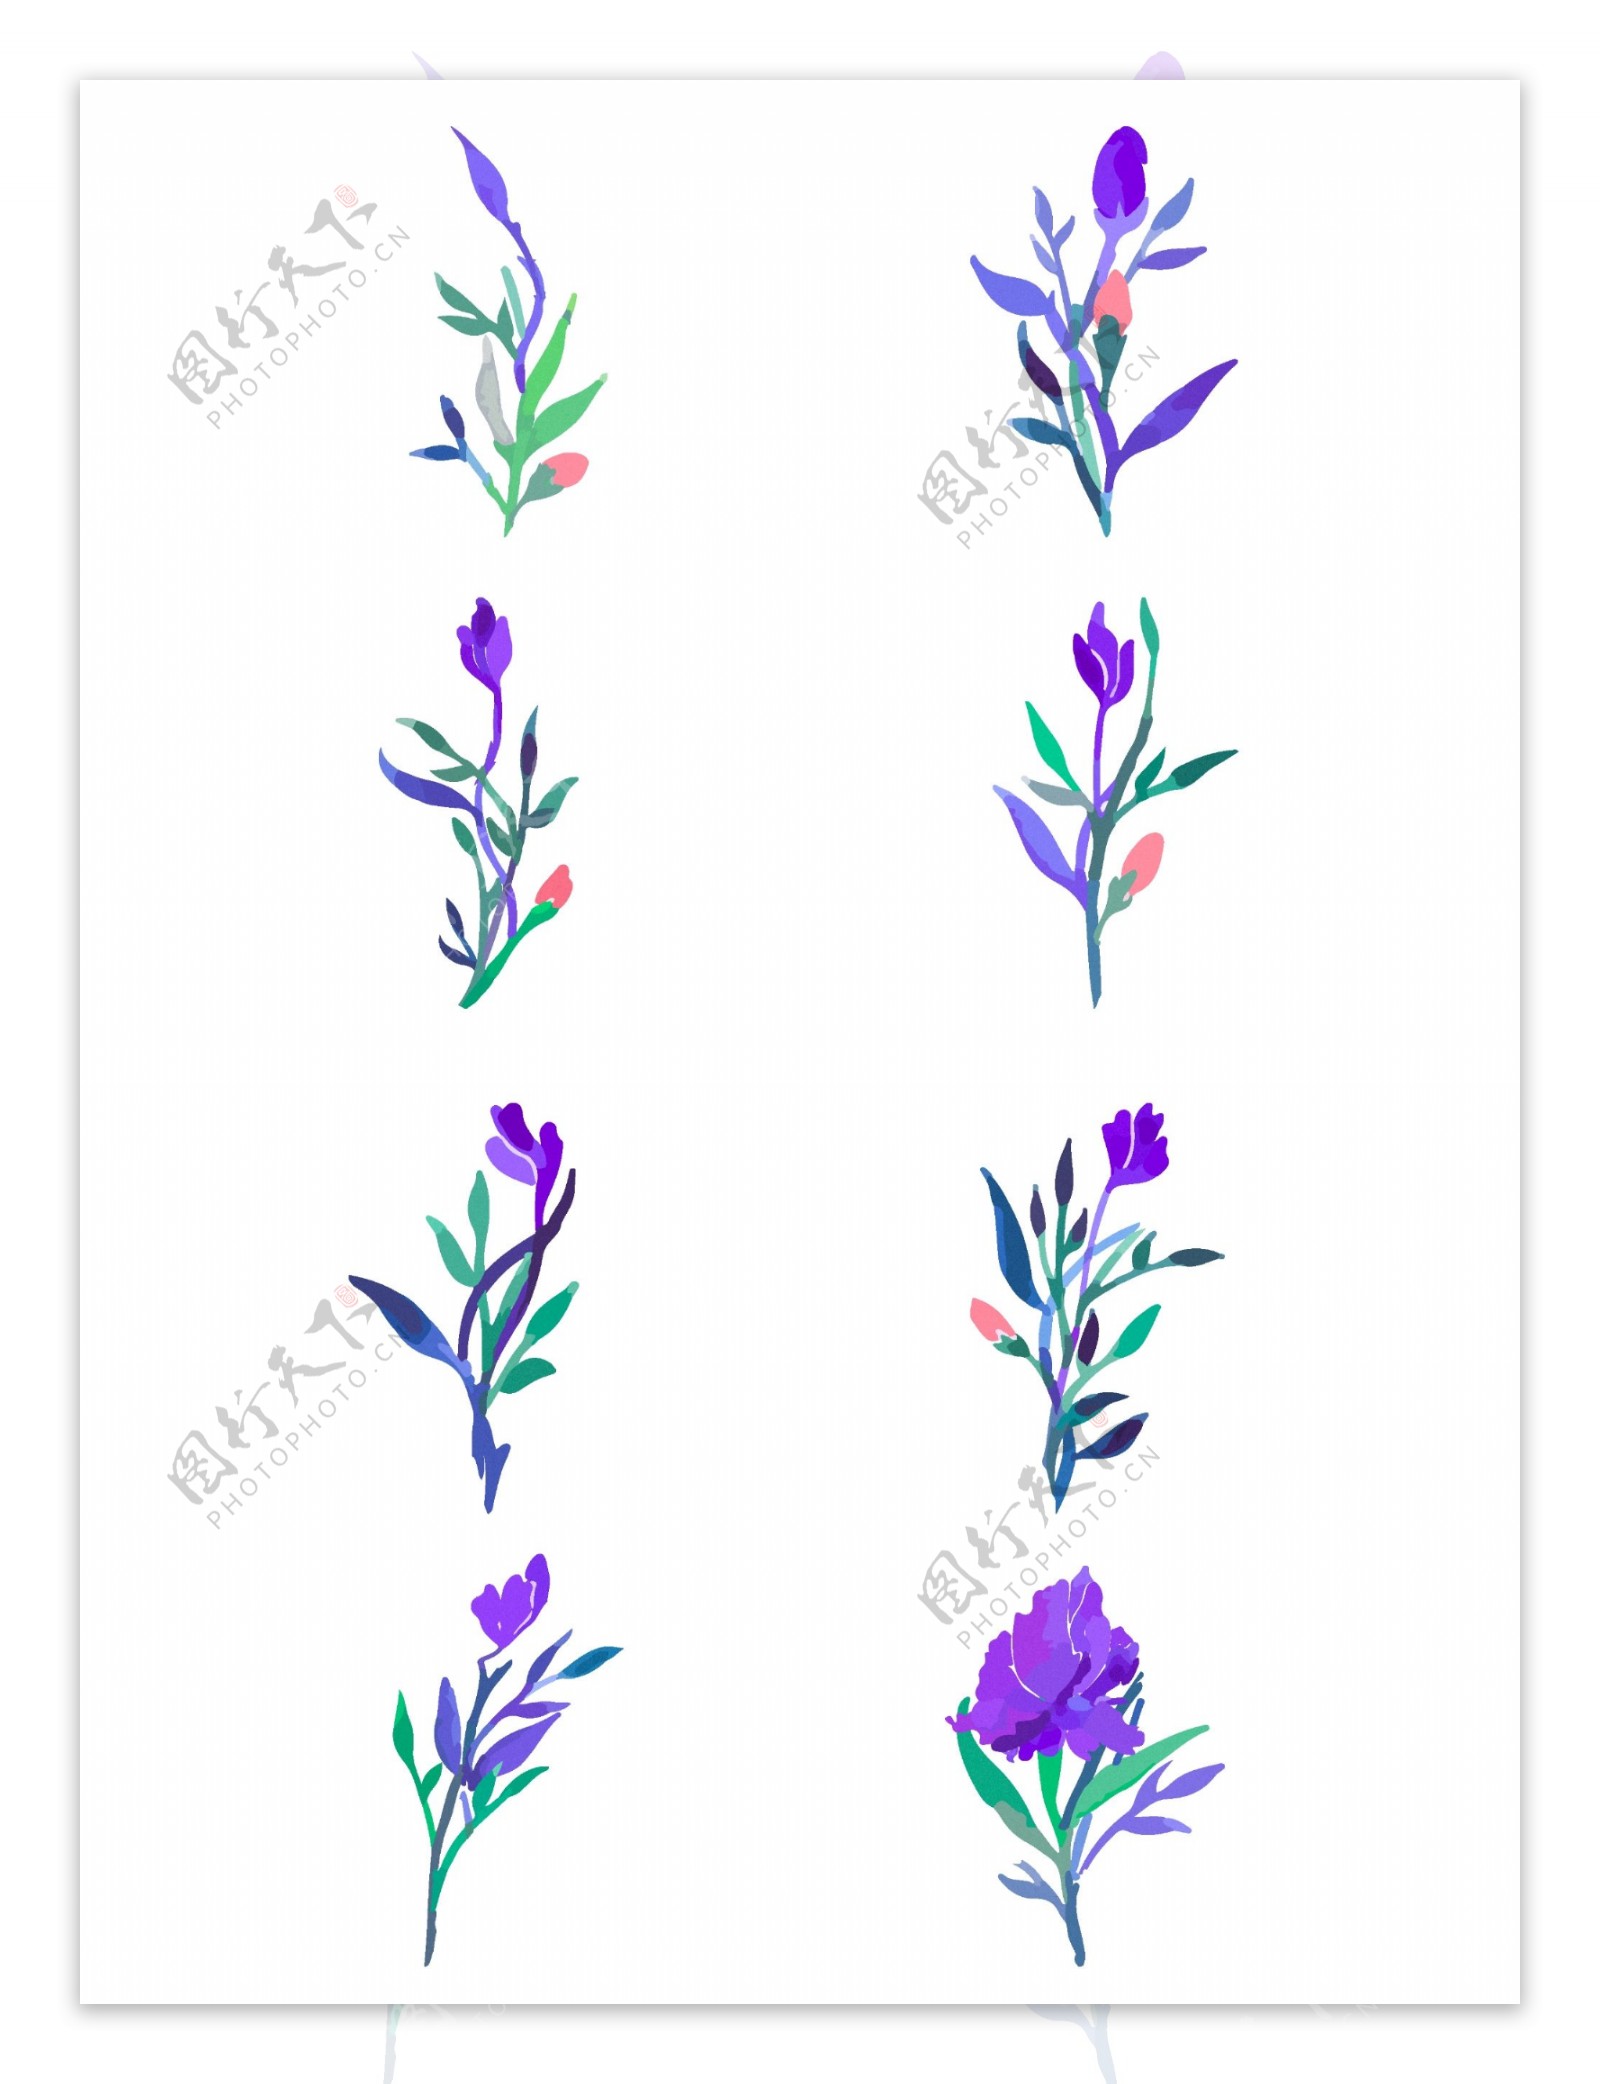 紫罗兰花朵植物树枝开花步骤元素